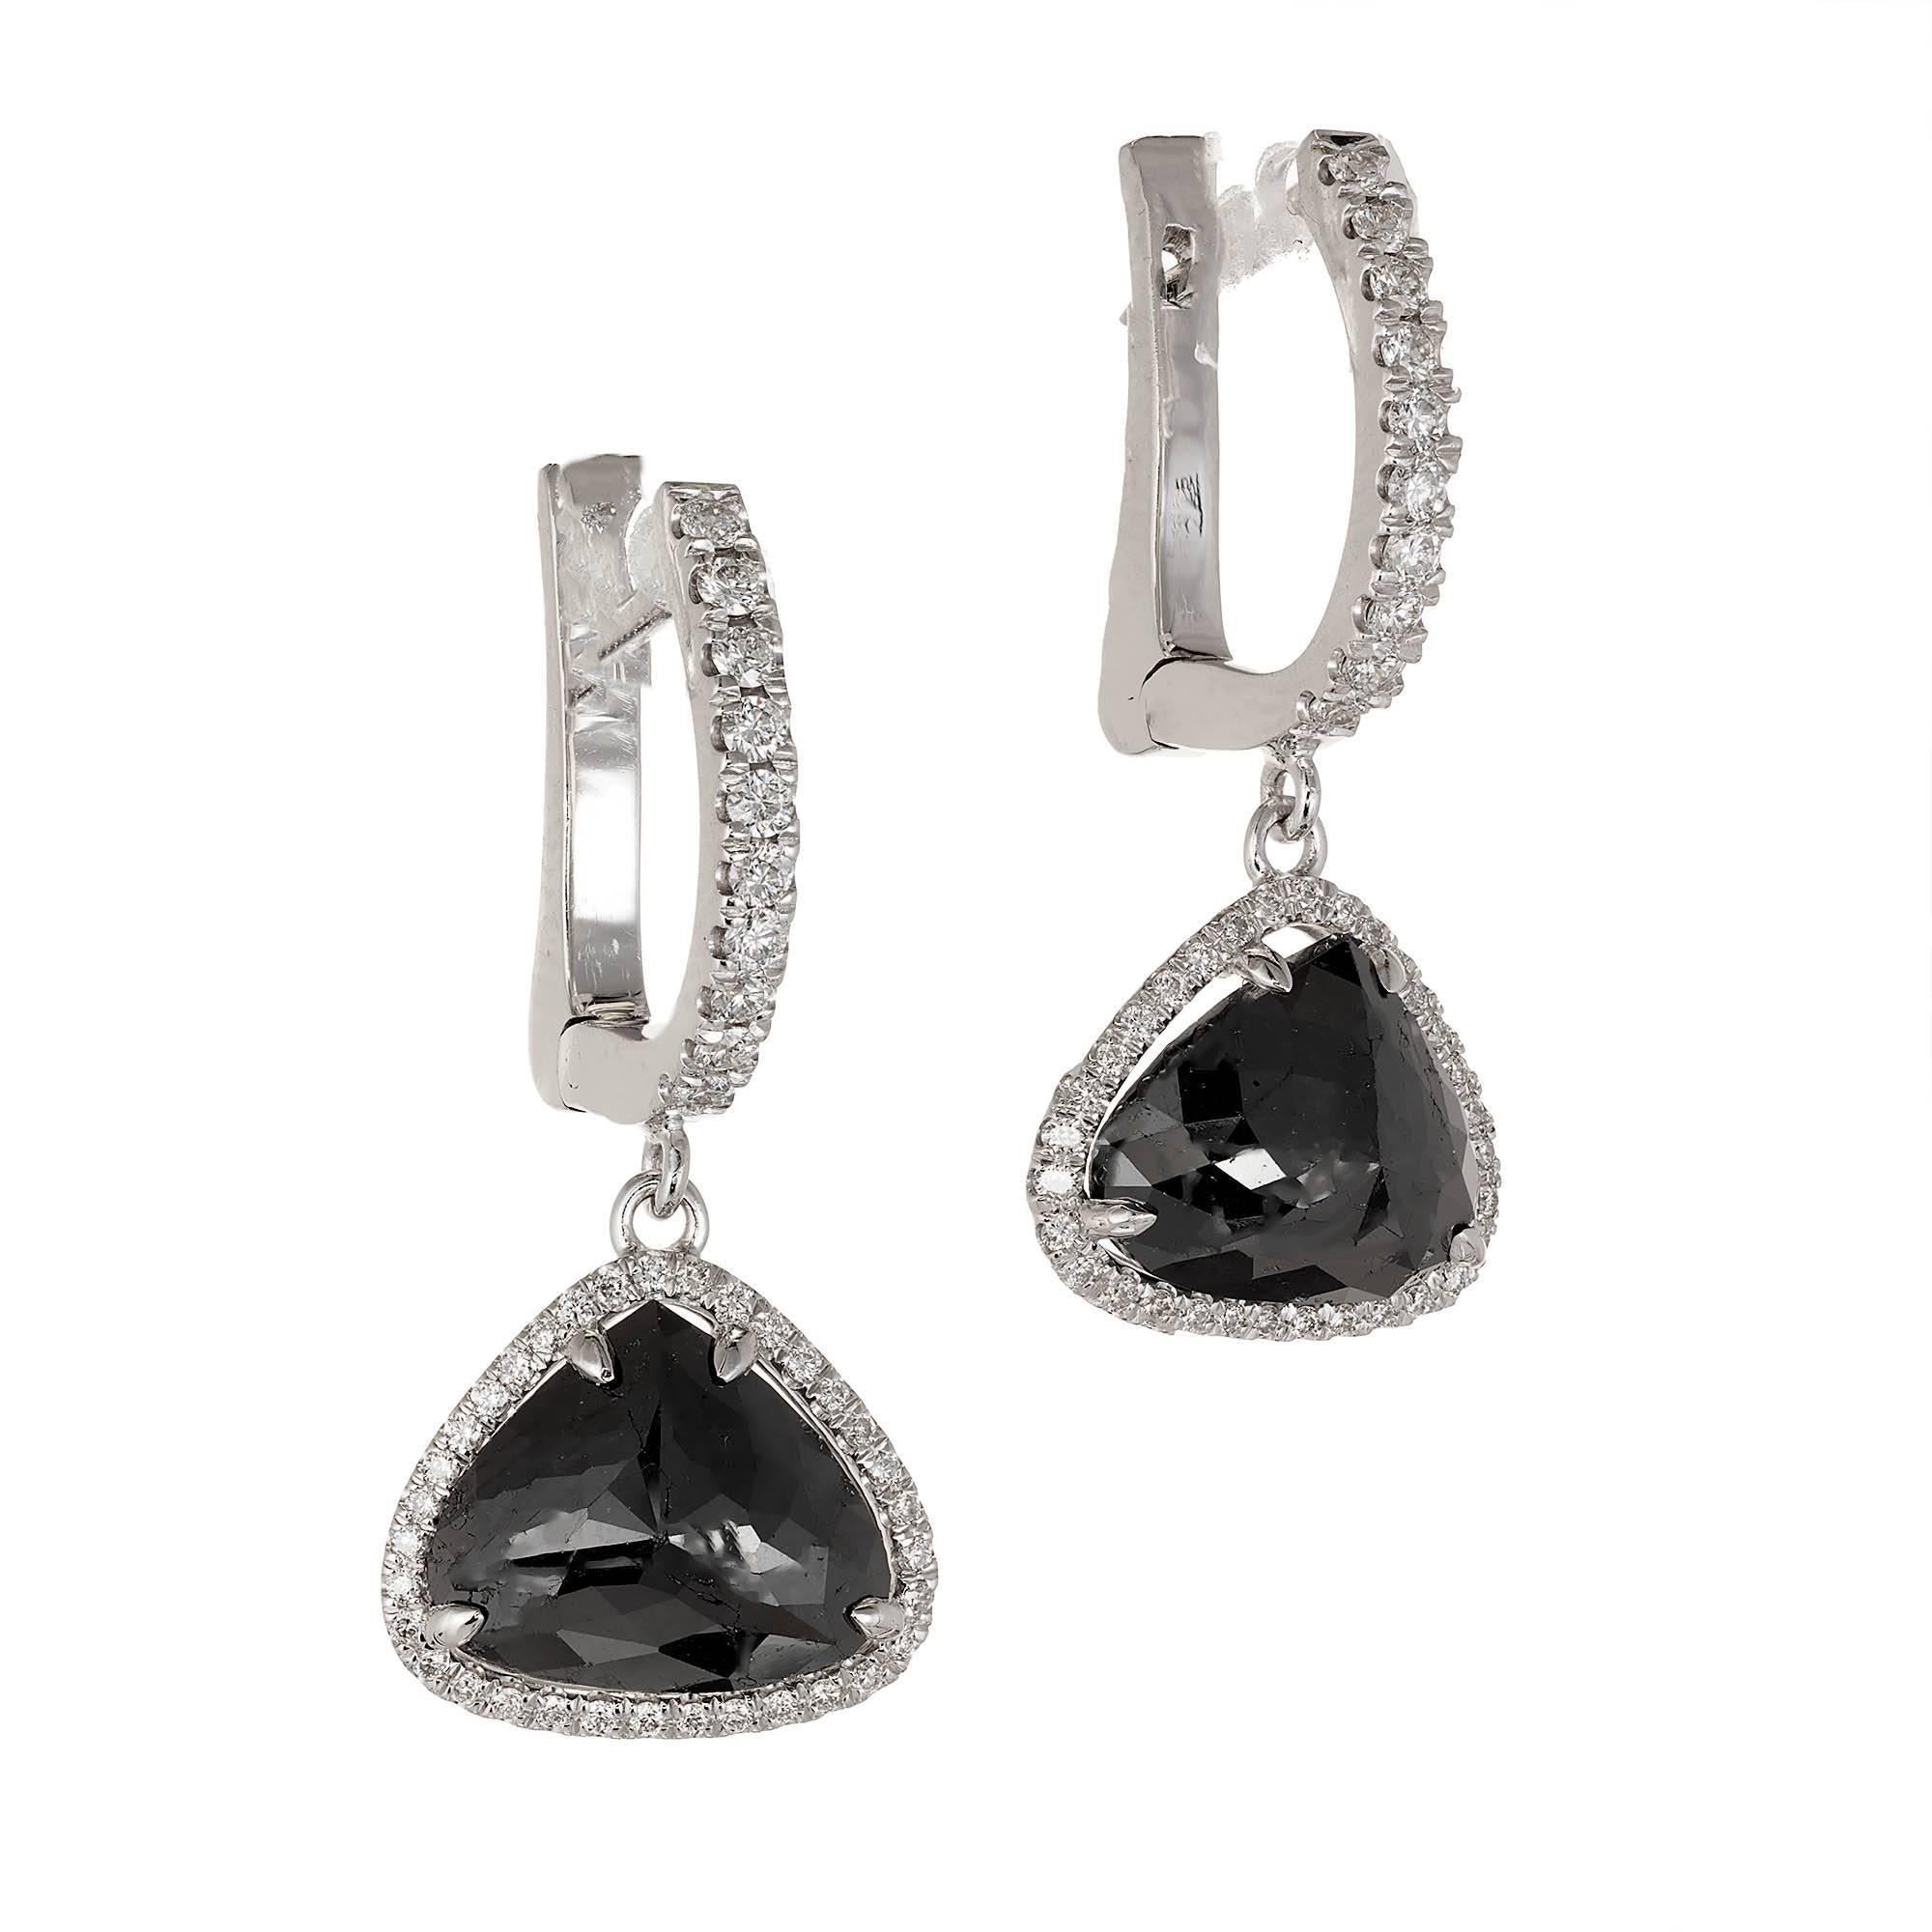 Peter Suchy schwarze Diamanten Halo Ohrringe 3,89cts von modifizierten Herz oder Birne Form. Schwarze Diamanten GIA-zertifiziert auch Farbe behandelt fancy schwarz. Eingefasst in einen Diamant-Baumel-Halo, der einen Diamant-Ring aus 18 Karat